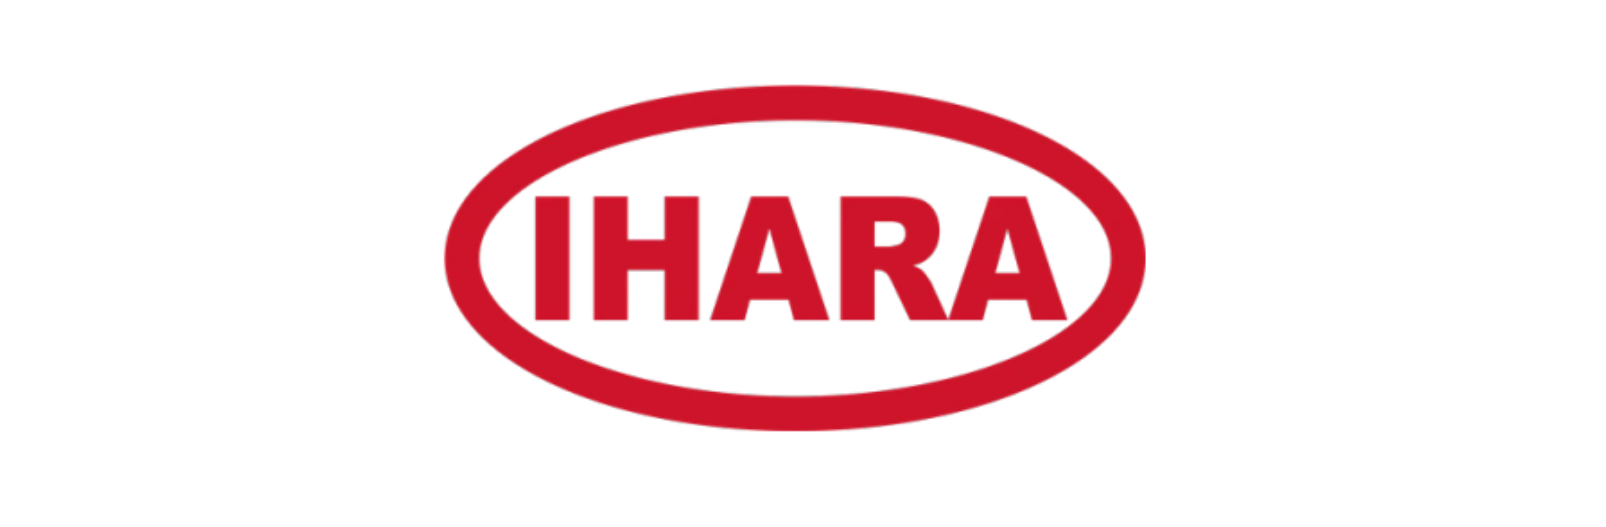 IHARA